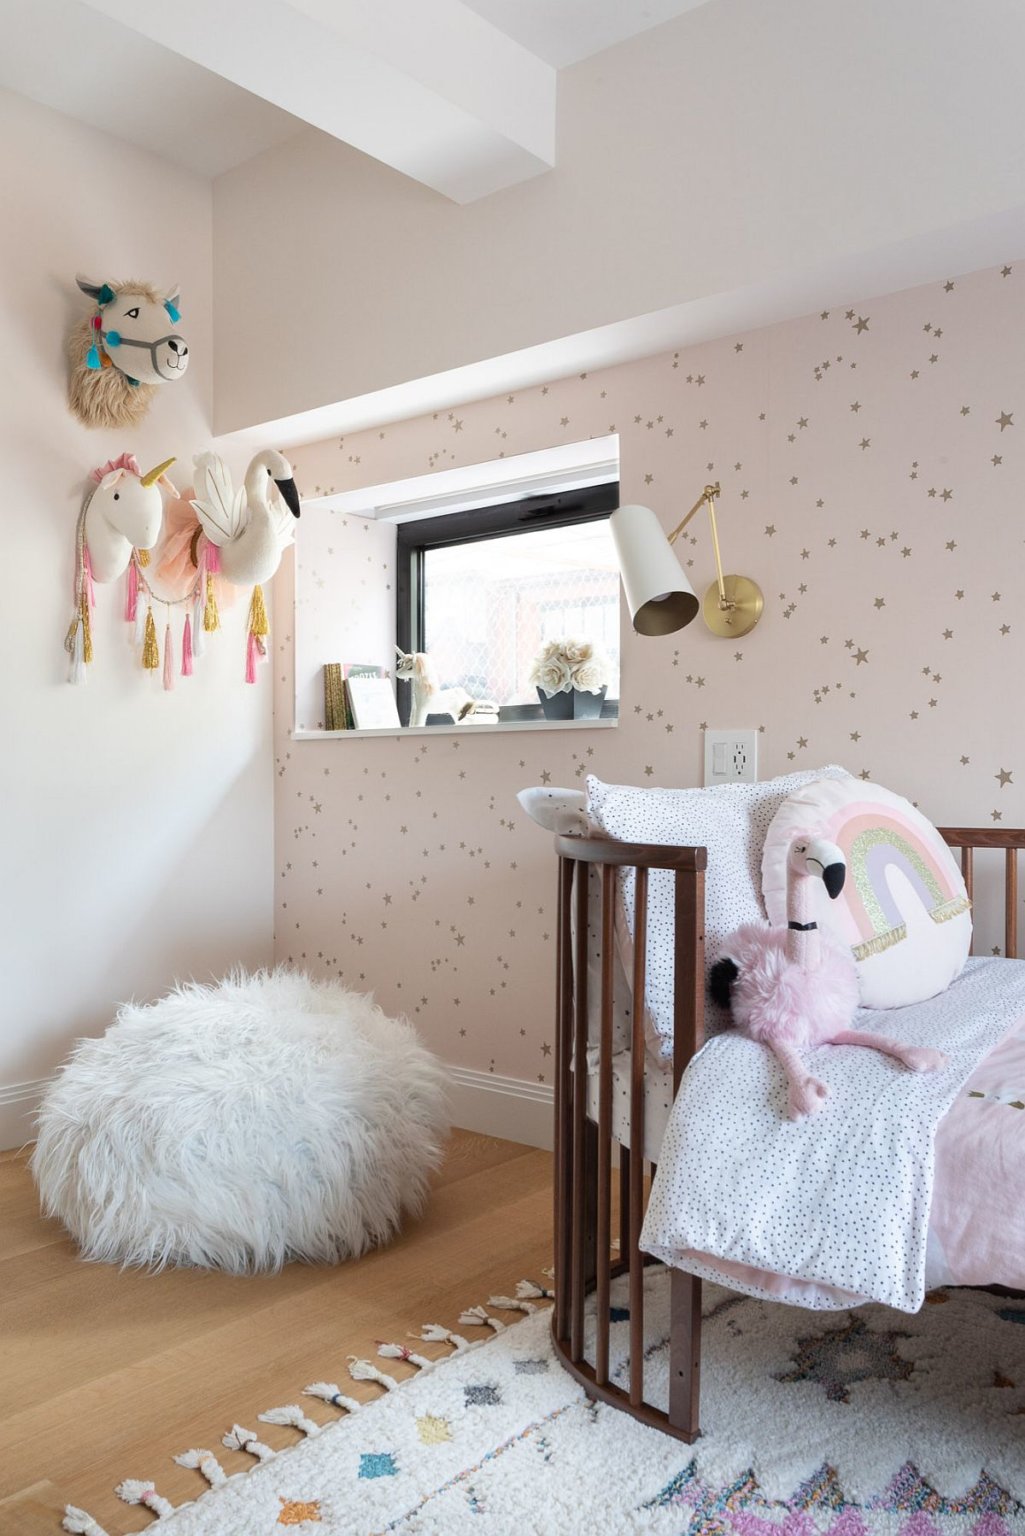 phòng ngủ trẻ em nổi bật với giấy dán tường màu hồng pastel, họa tiết ngôi sao, giường sơ sinh